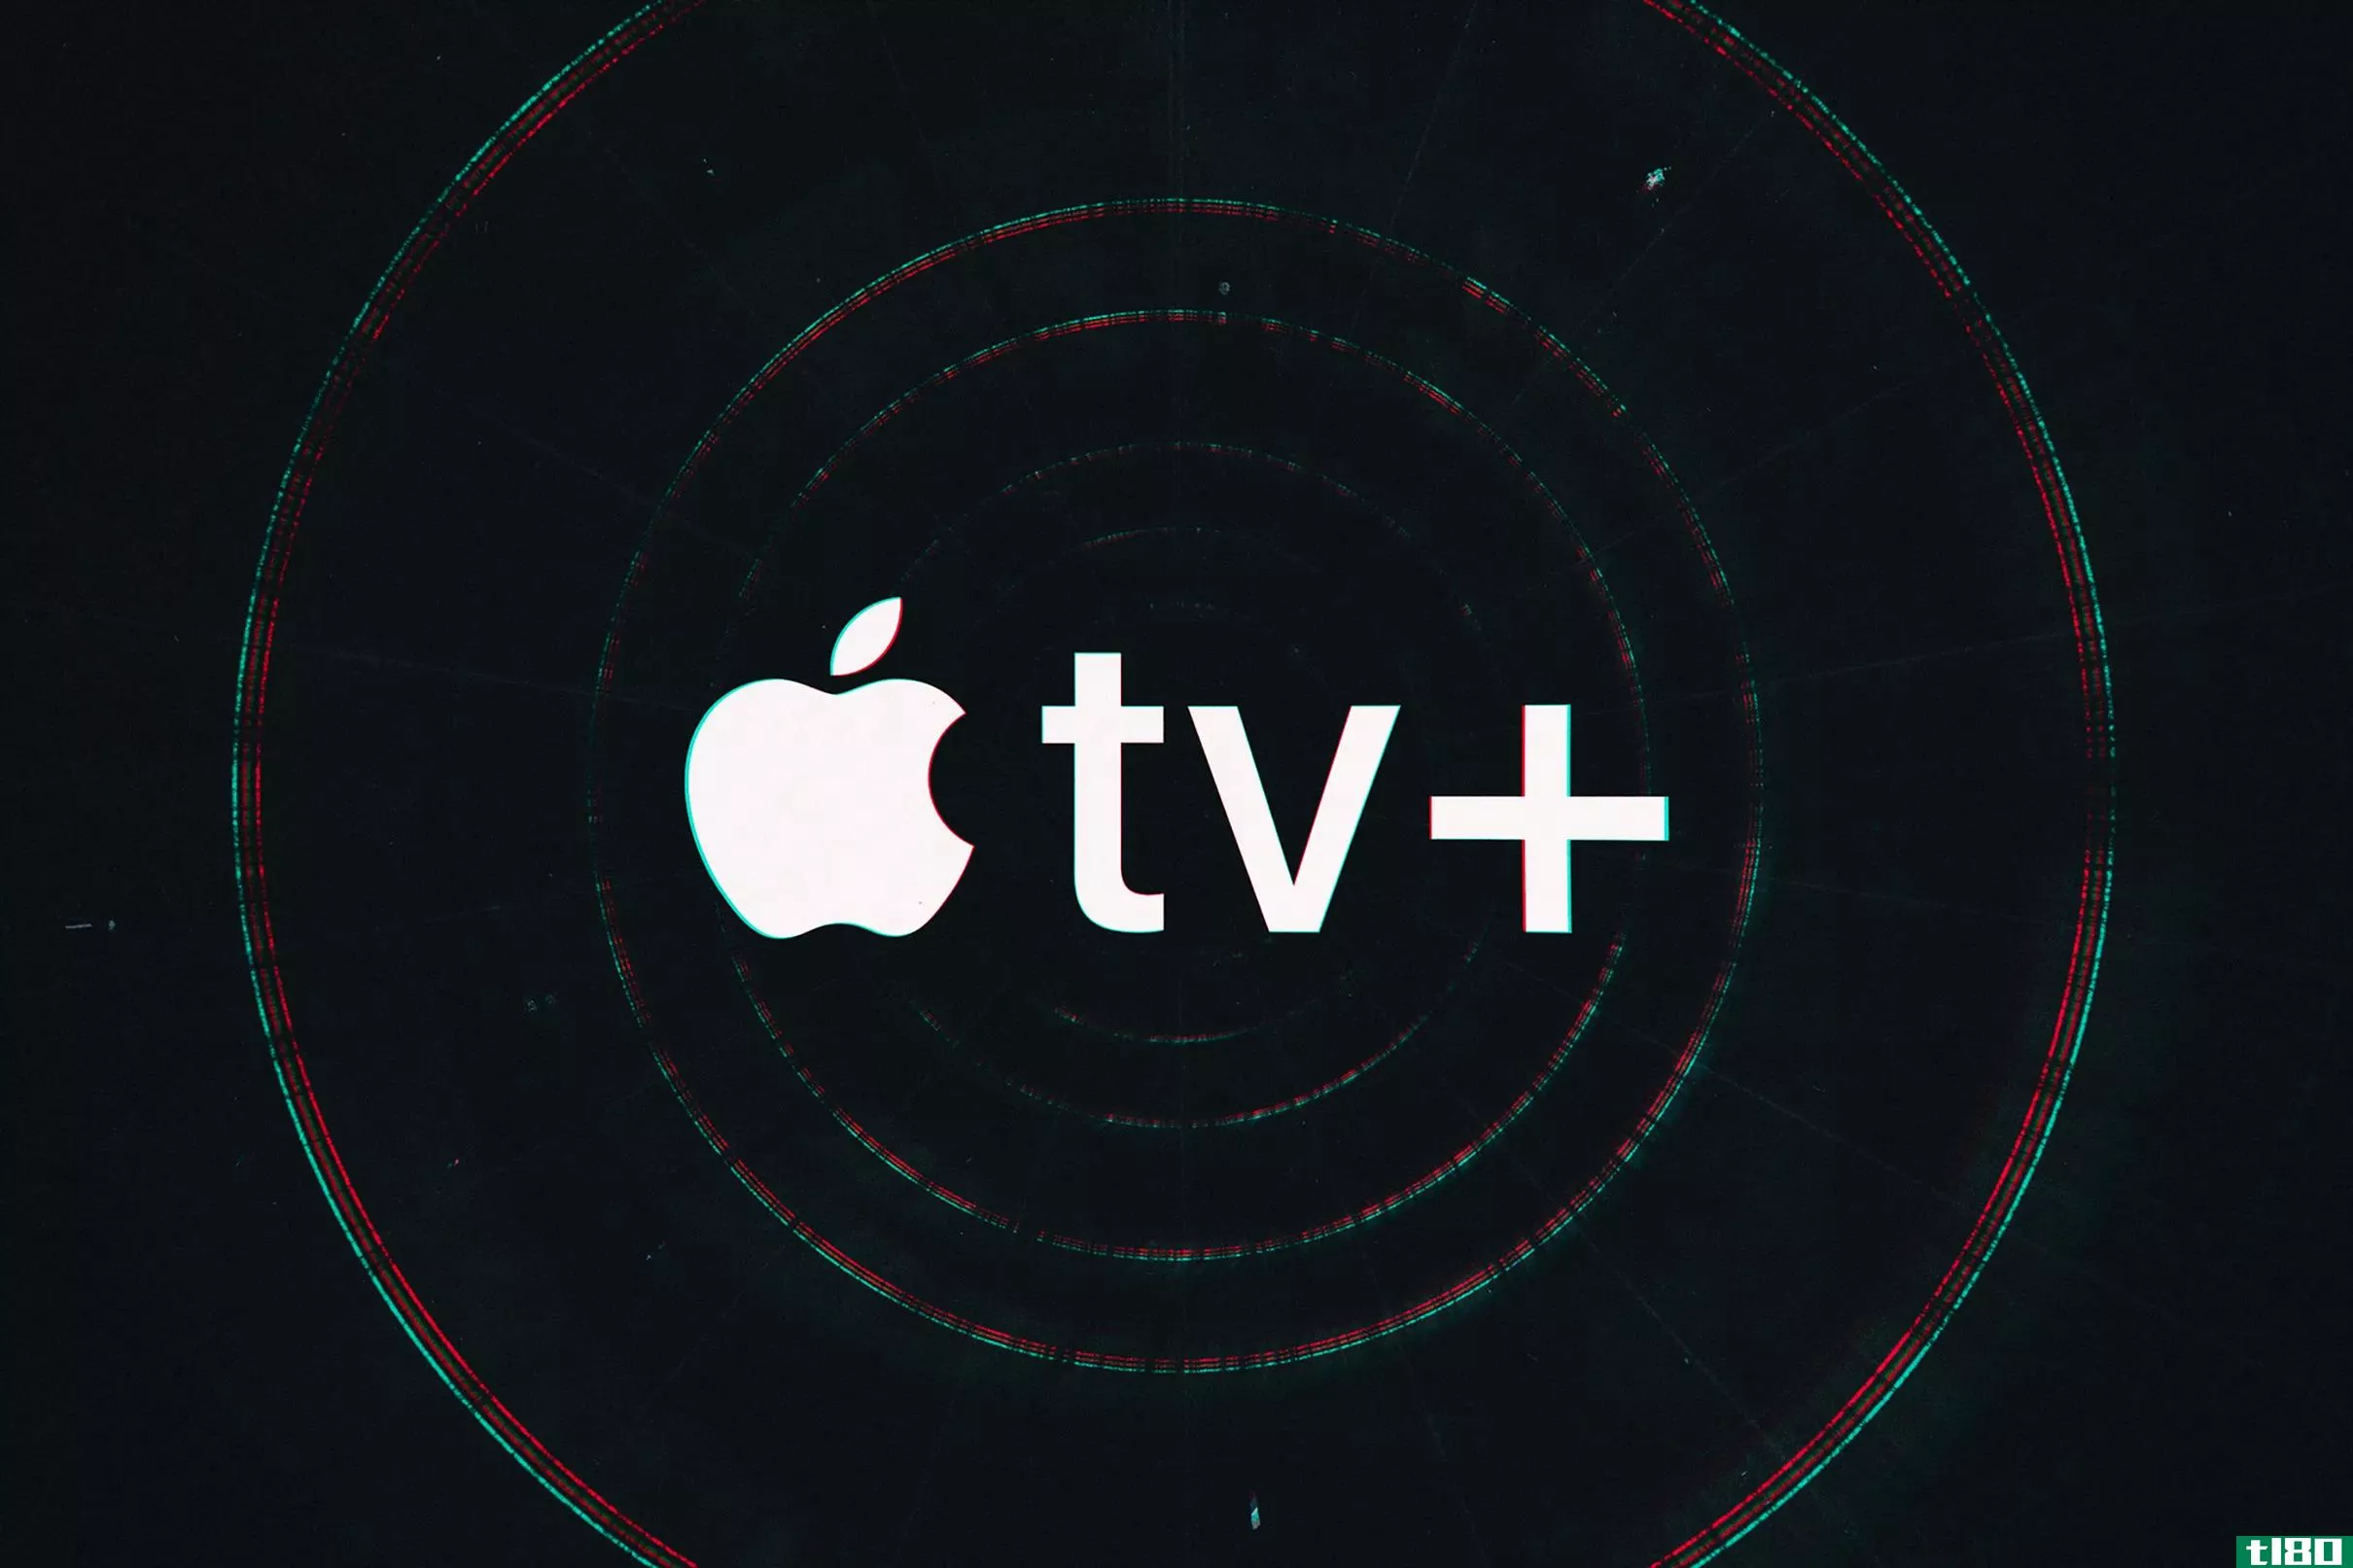 apple tv plus用户现在可以享受cbs all access和showtime的折扣套餐